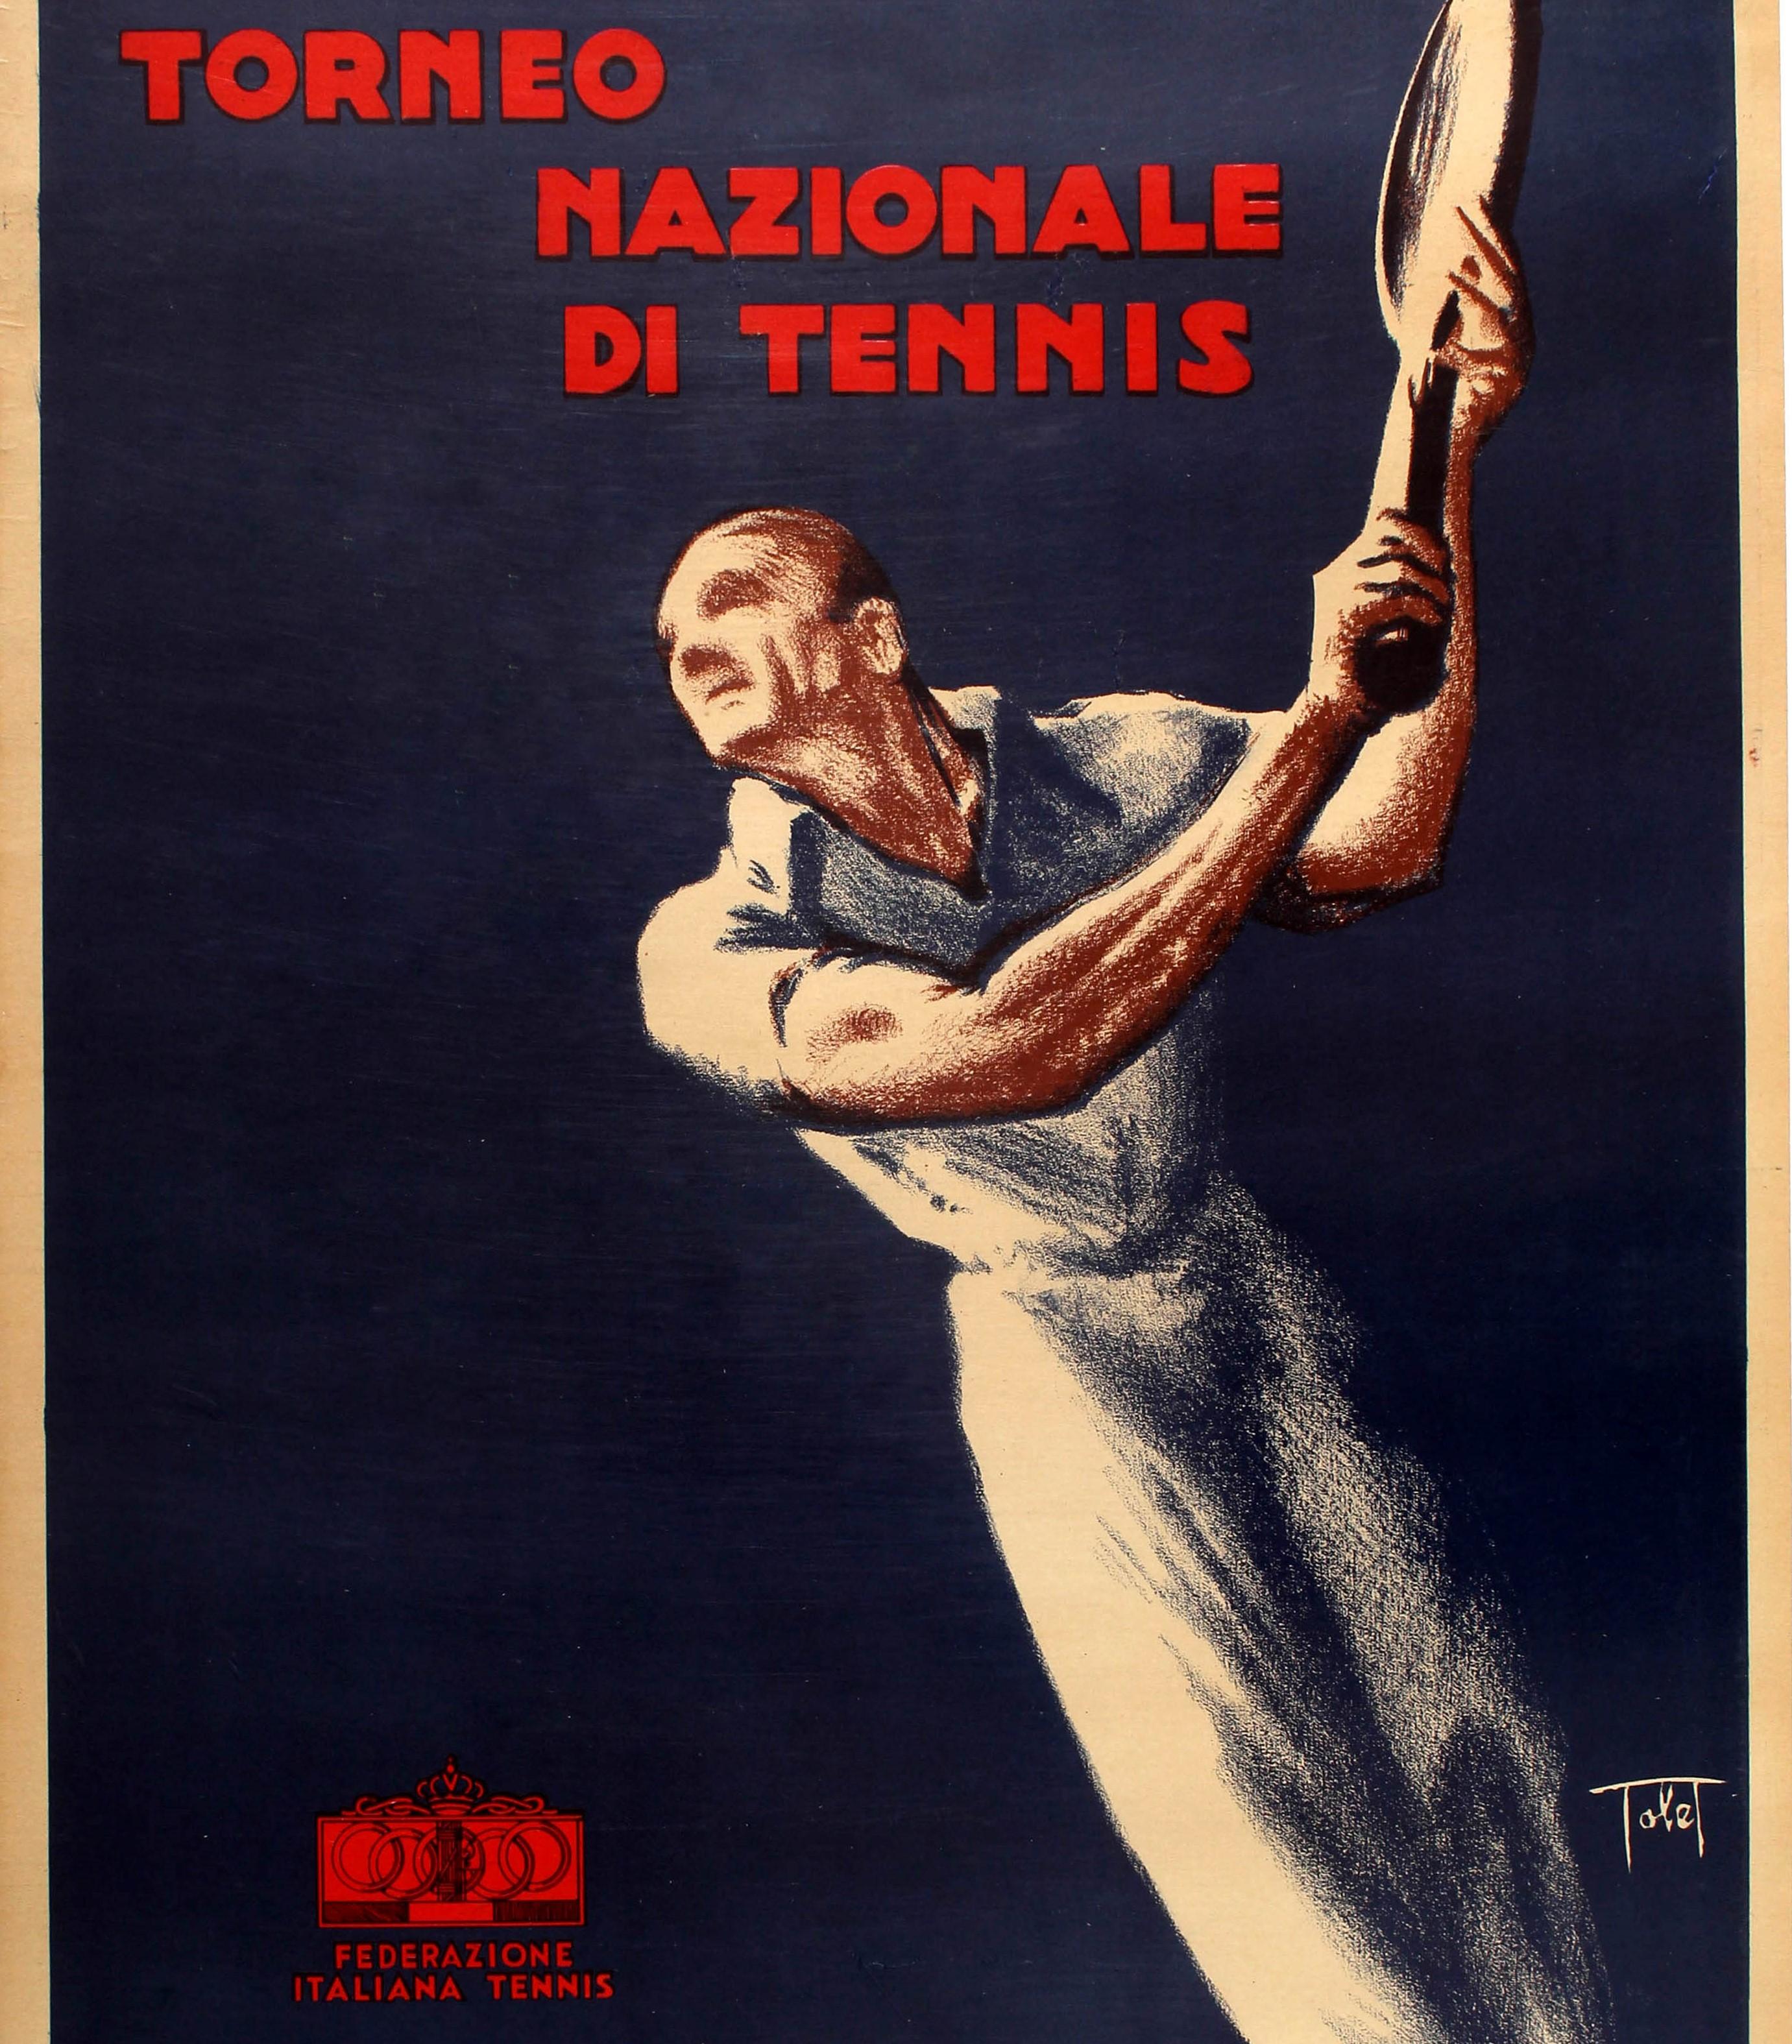 Affiche sportive originale pour le Torneo Nazionale Di Tennis / Tournoi National de Tennis publié par la Fédération Italienne de Tennis comportant une illustration dynamique de style Art Deco d'un joueur de tennis portant une chemise et un pantalon